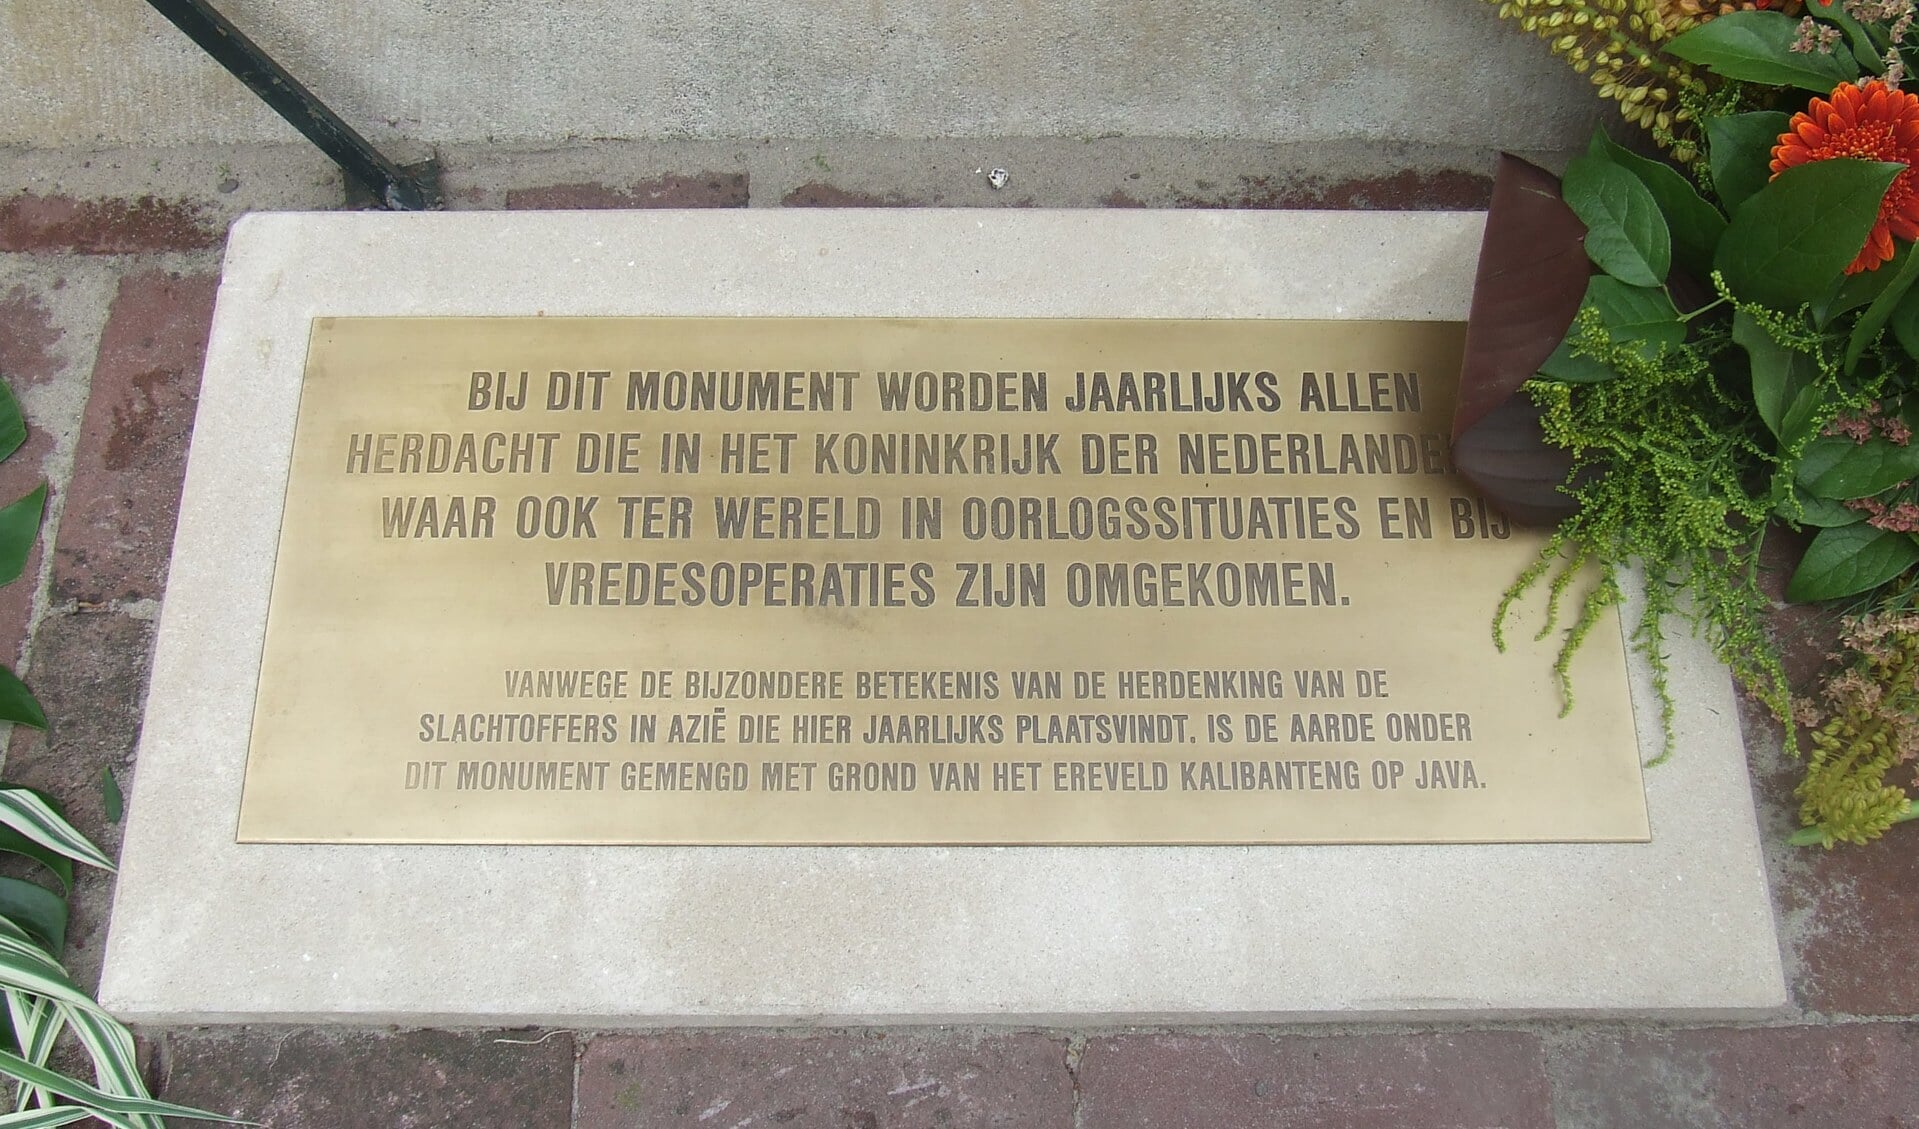  De plaquette die bij het oorlogsmonument in Bilthoven is aangebracht.